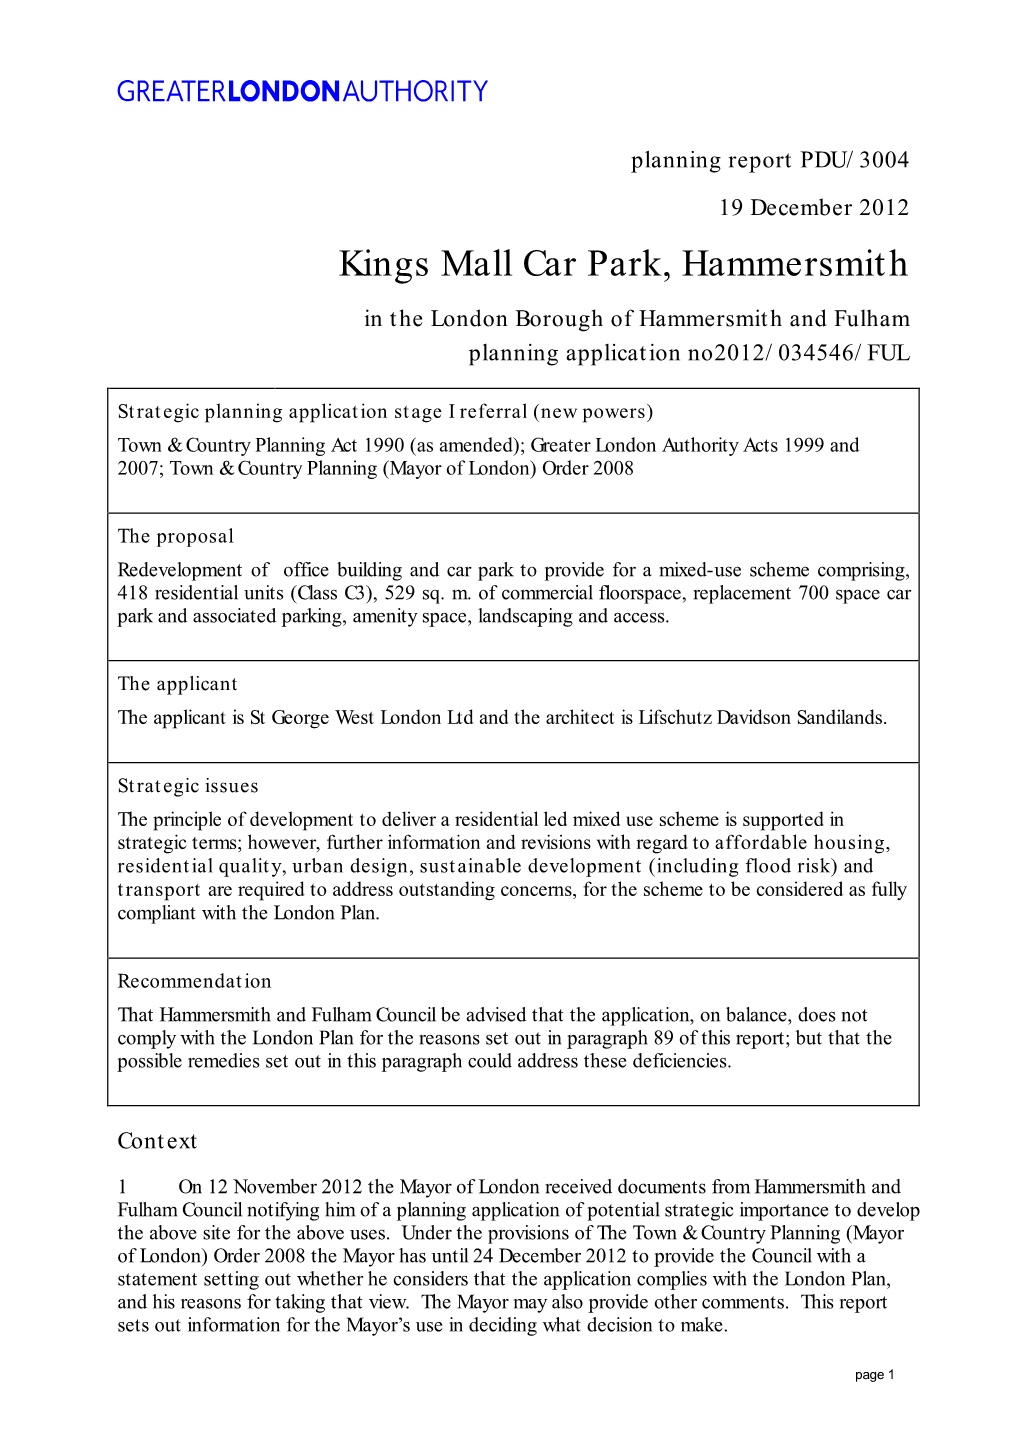 Kings Mall Car Park, Hammersmith